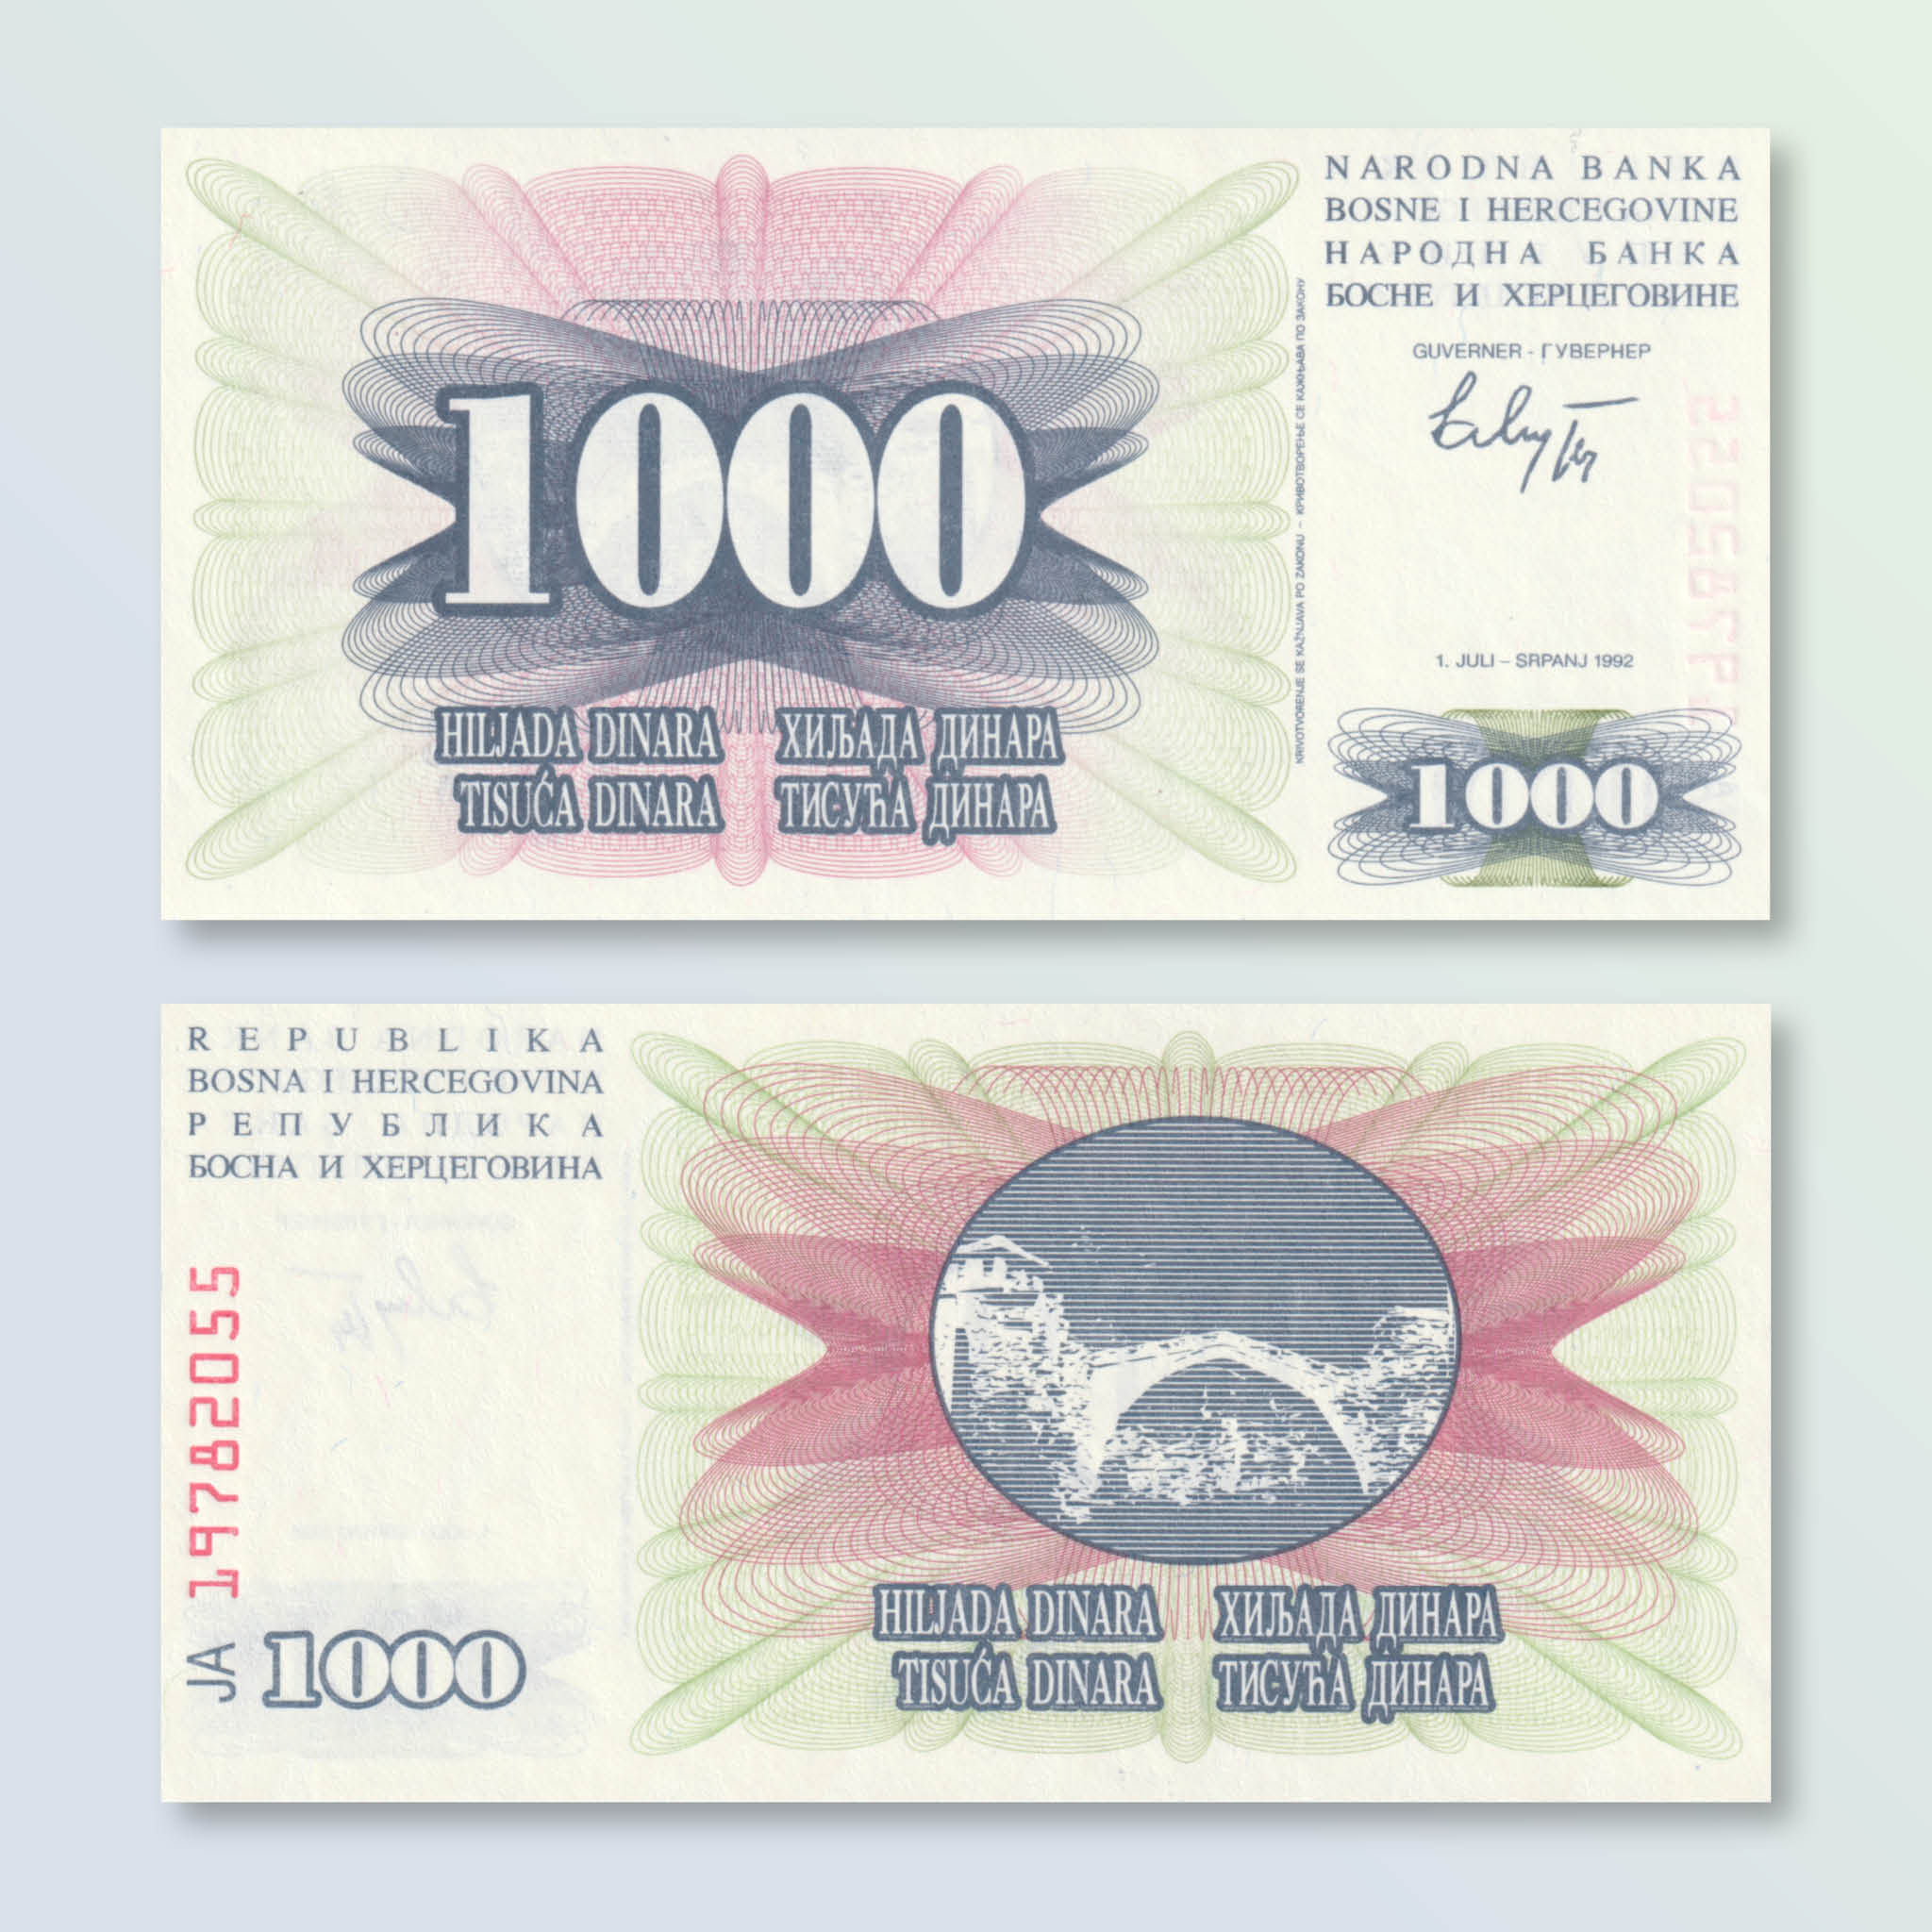 Bosnia 1000 Dinars, 1992, B118a, P15a, UNC - Robert's World Money - World Banknotes